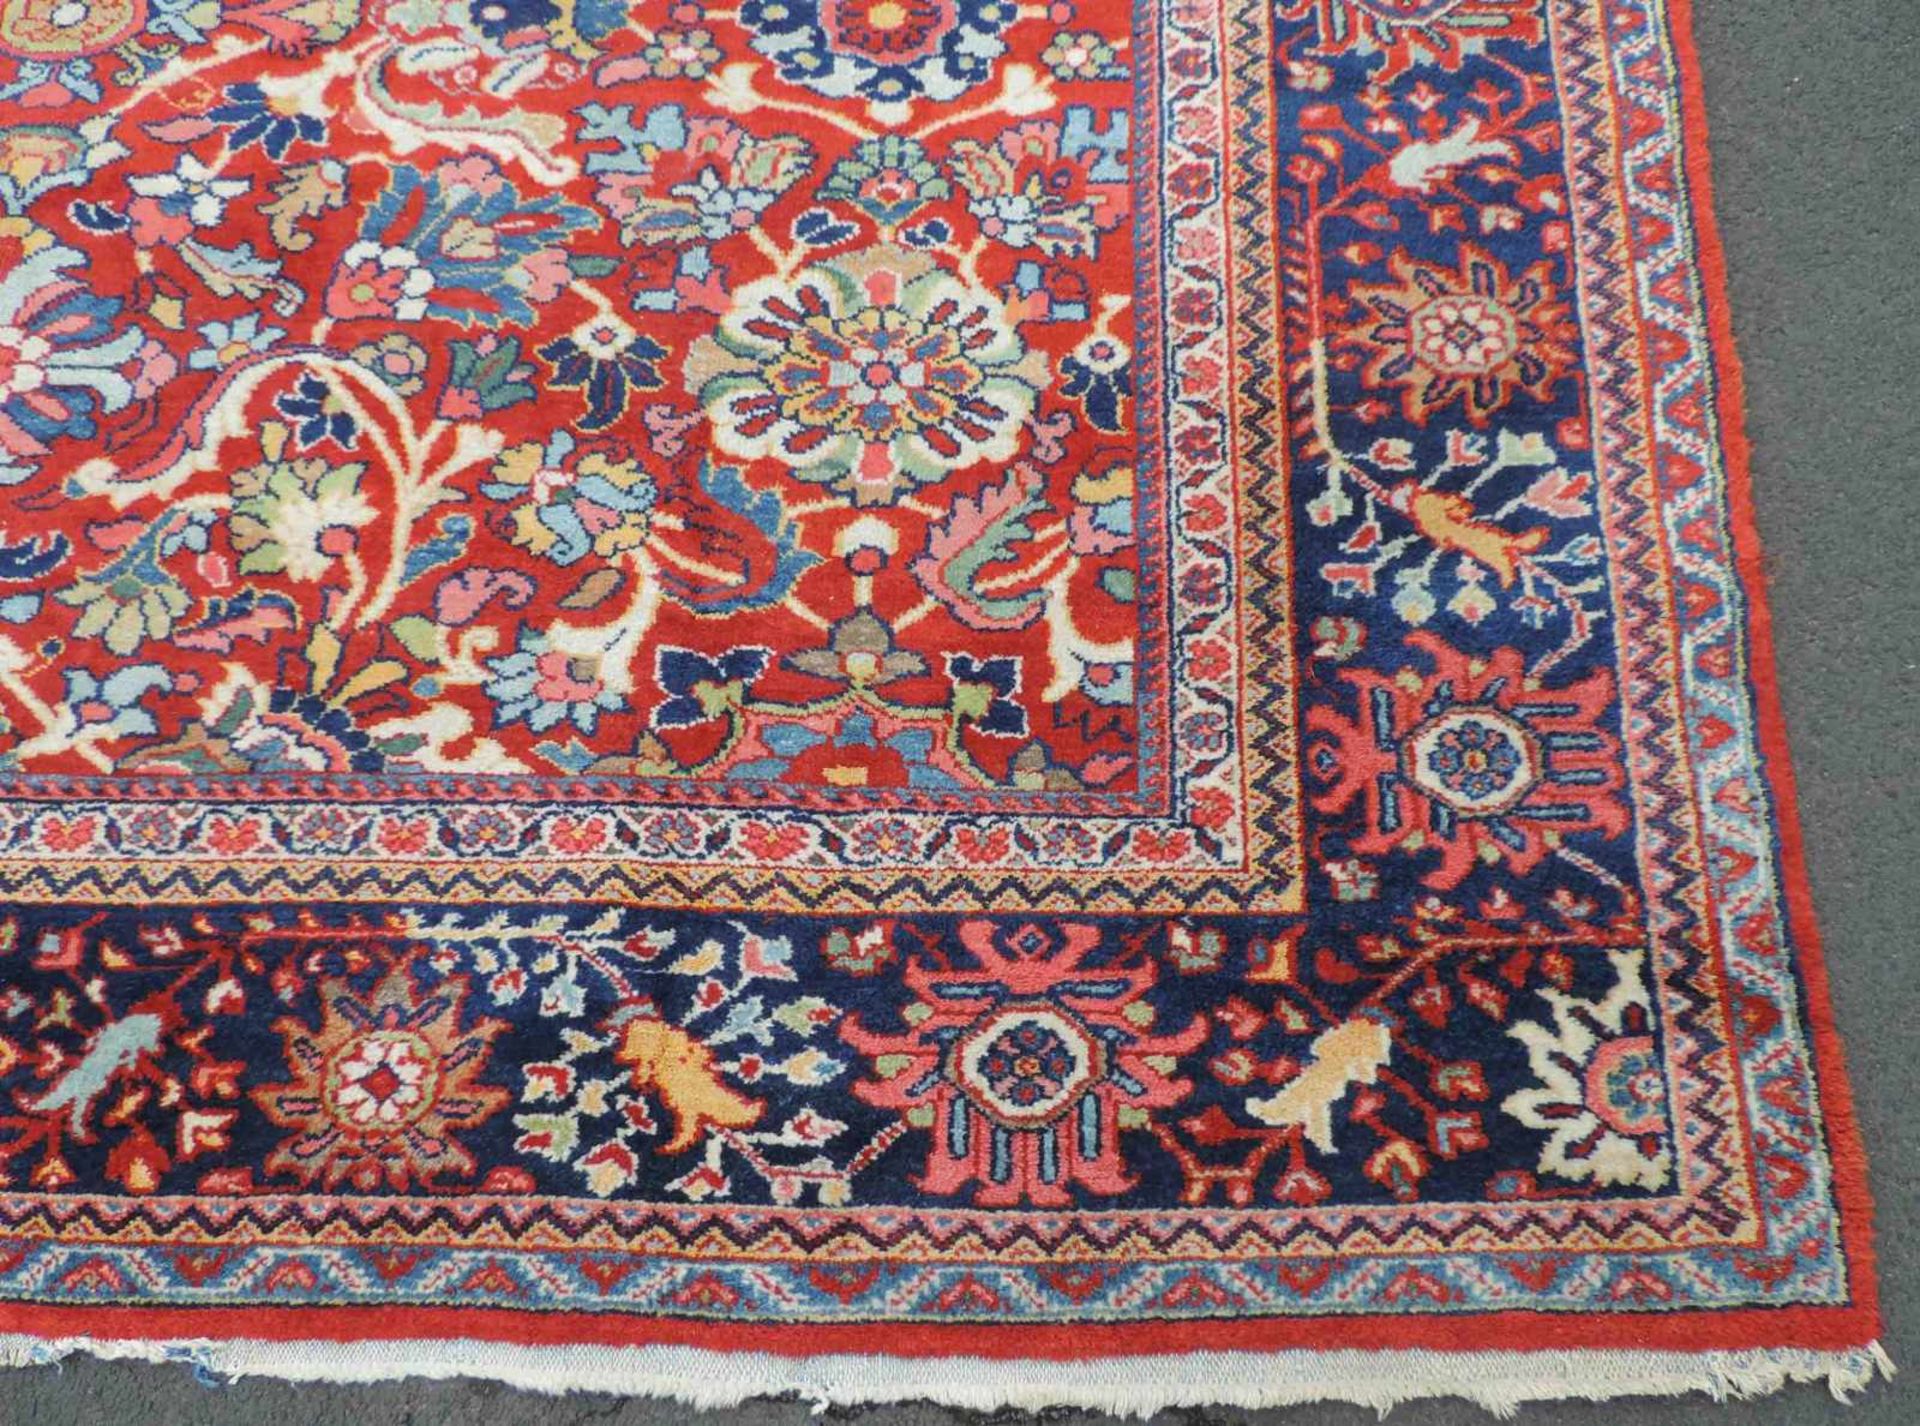 Mahal Teppich. Iran, antik, um 1900. 374 cm x 291 cm. Handgeknüpft. Wolle auf Baumwolle. Wohl - Bild 3 aus 9